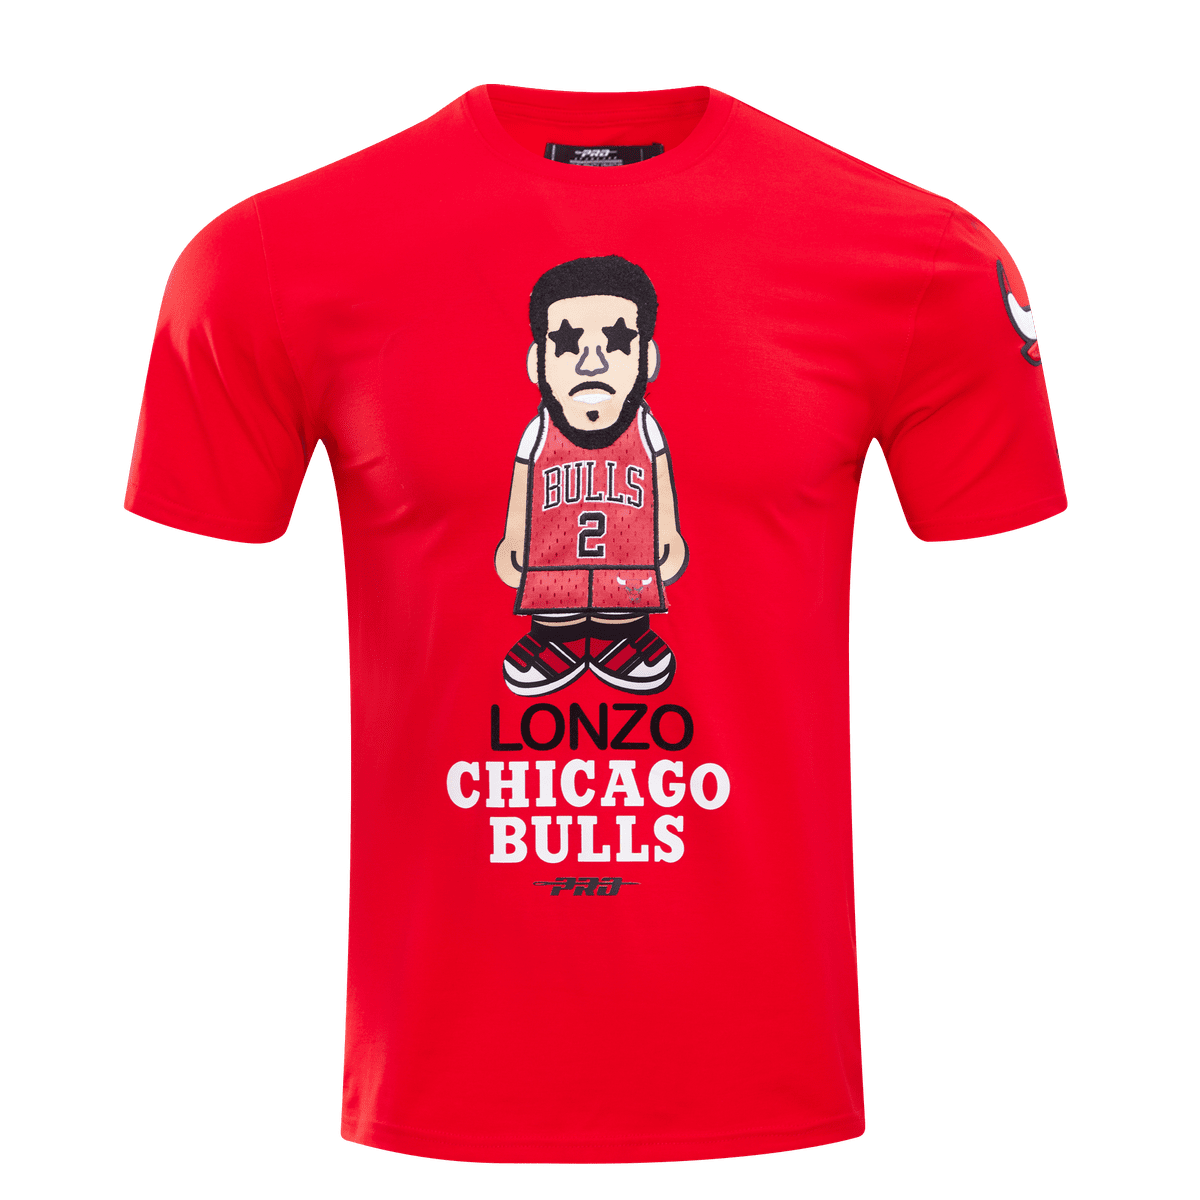 CHICAGO BULLS PRO CARTOON PLAYER SHIRT LONZO (RED)